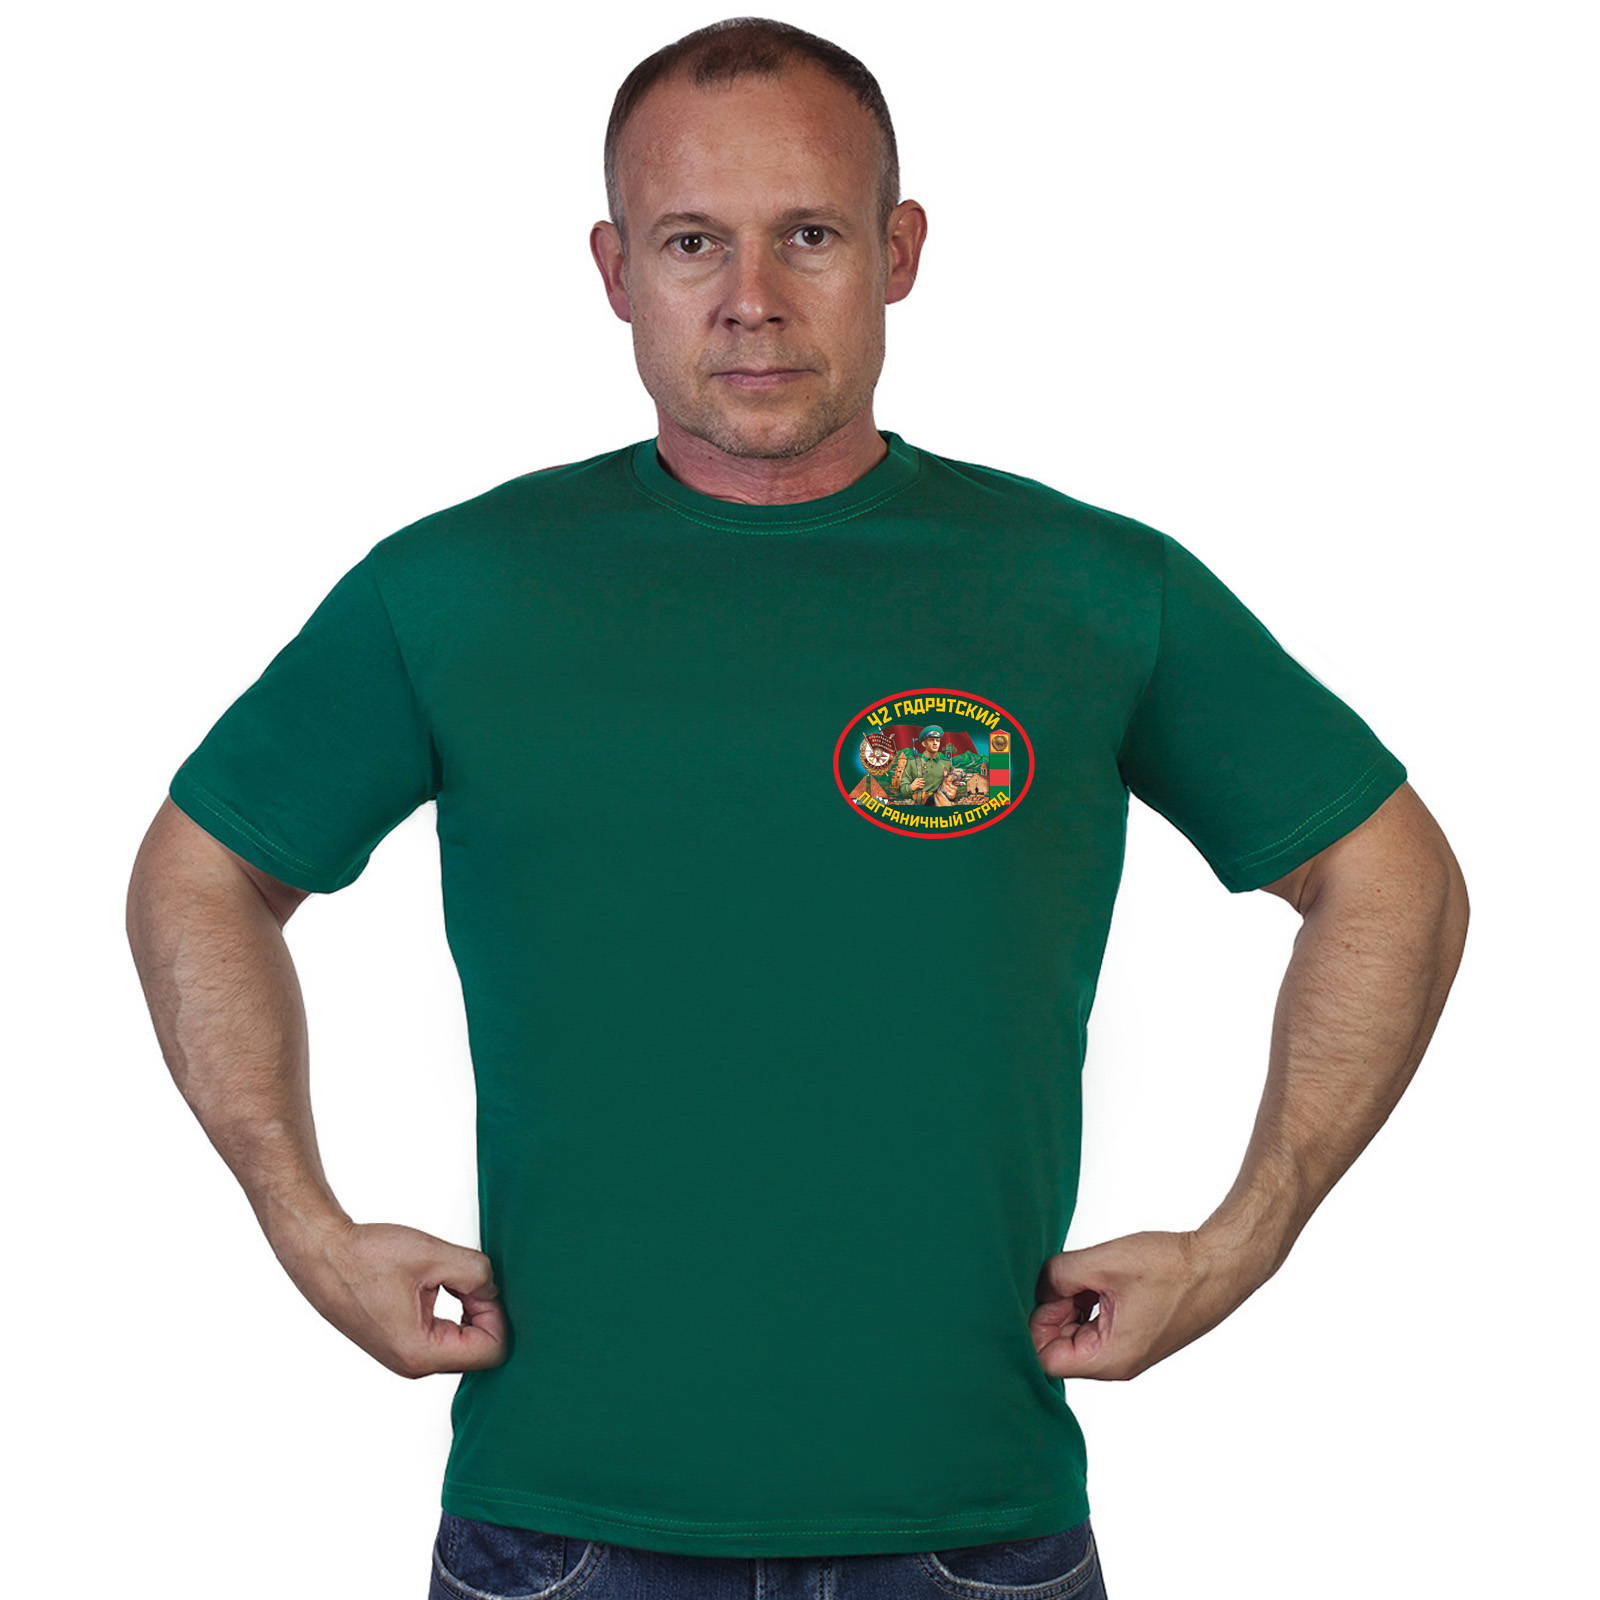 Купить в Москве футболку 42 Гадрутский пограничный отряд